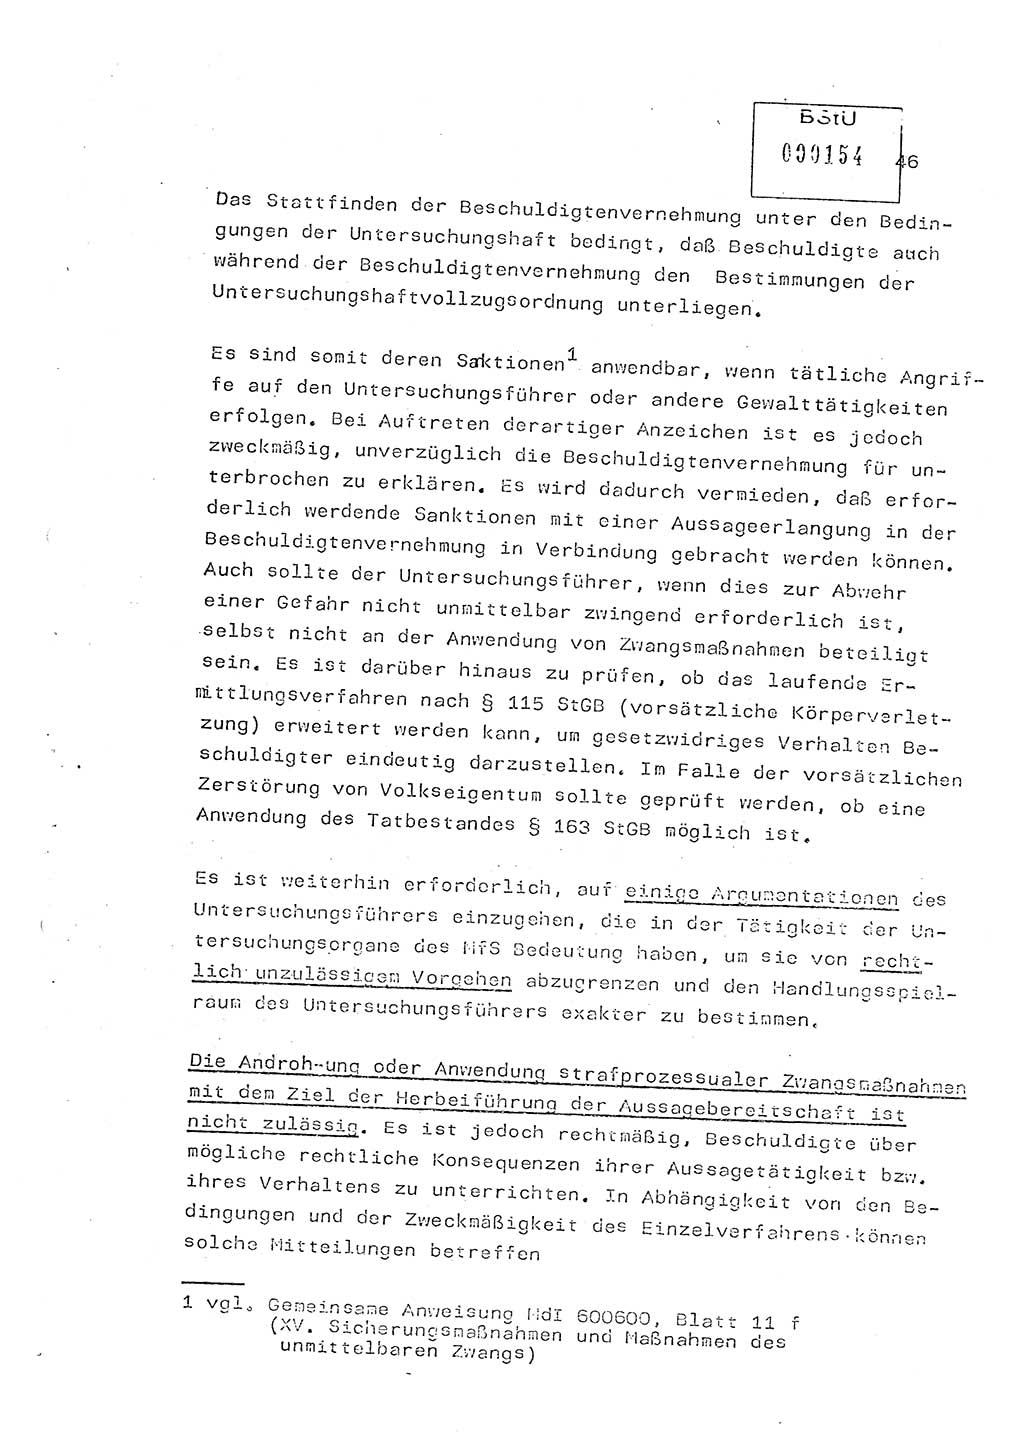 Lektion Ministerium für Staatssicherheit (MfS) [Deutsche Demokratische Republik (DDR)], Hauptabteilung (HA) Ⅸ, Vertrauliche Verschlußsache (VVS) o014-343/83, Berlin 1983, Seite 46 (Lekt. MfS DDR HA Ⅸ VVS o014-343/83 1983, S. 46)